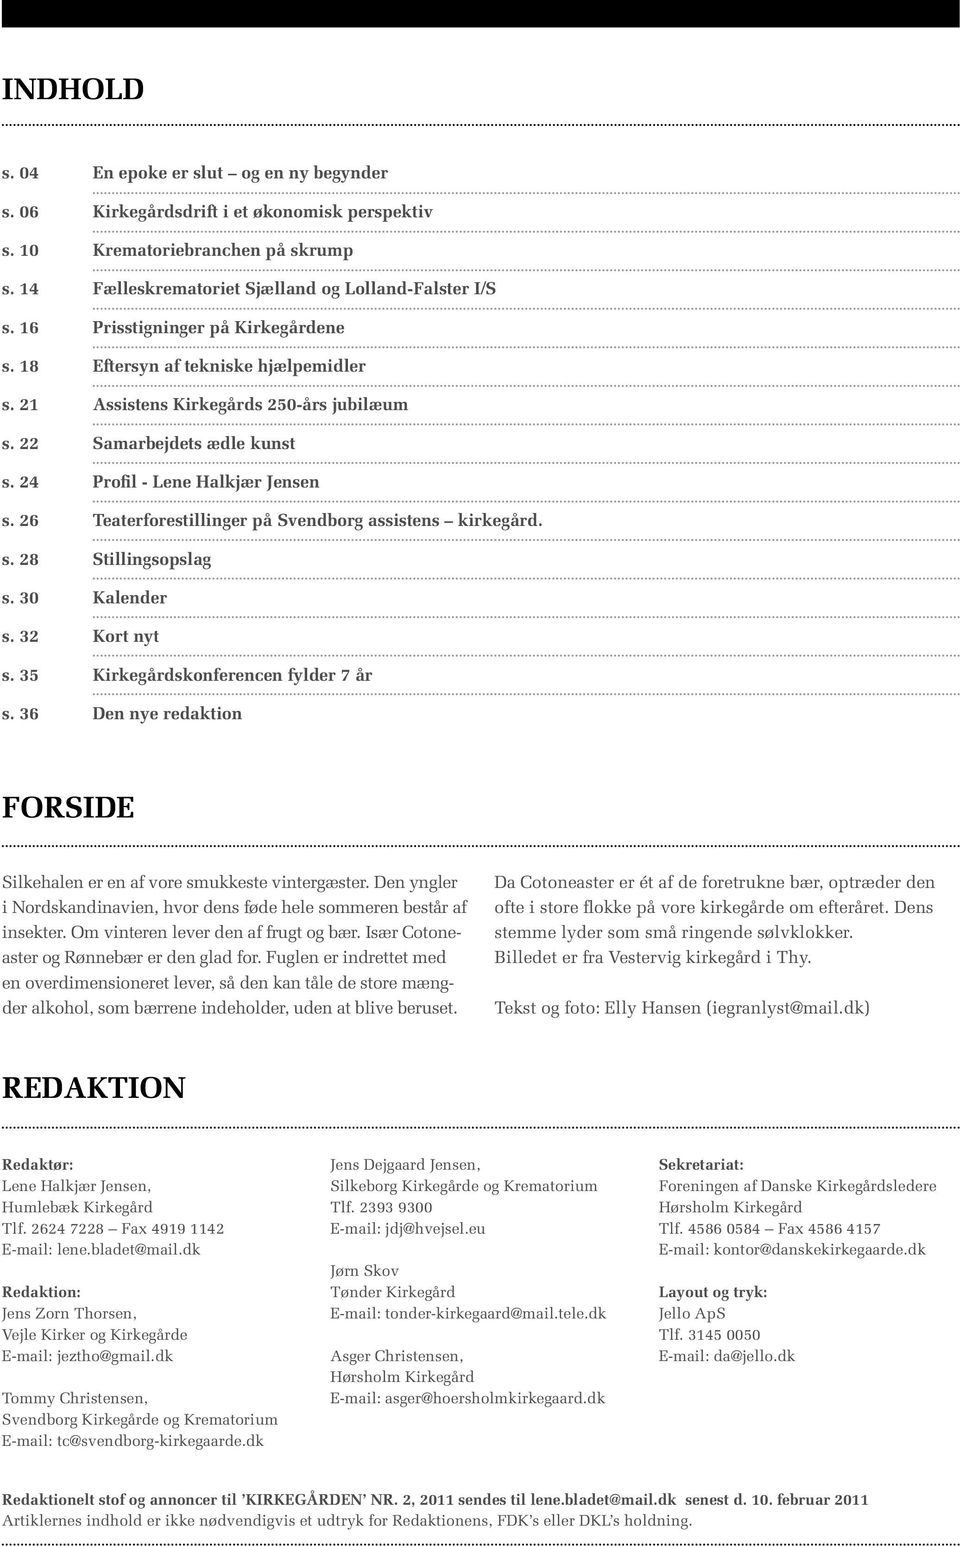 26 Teaterforestillinger på Svendborg assistens kirkegård. s. 28 Stillingsopslag s. 30 Kalender s. 32 Kort nyt s. 35 Kirkegårdskonferencen fylder 7 år s.